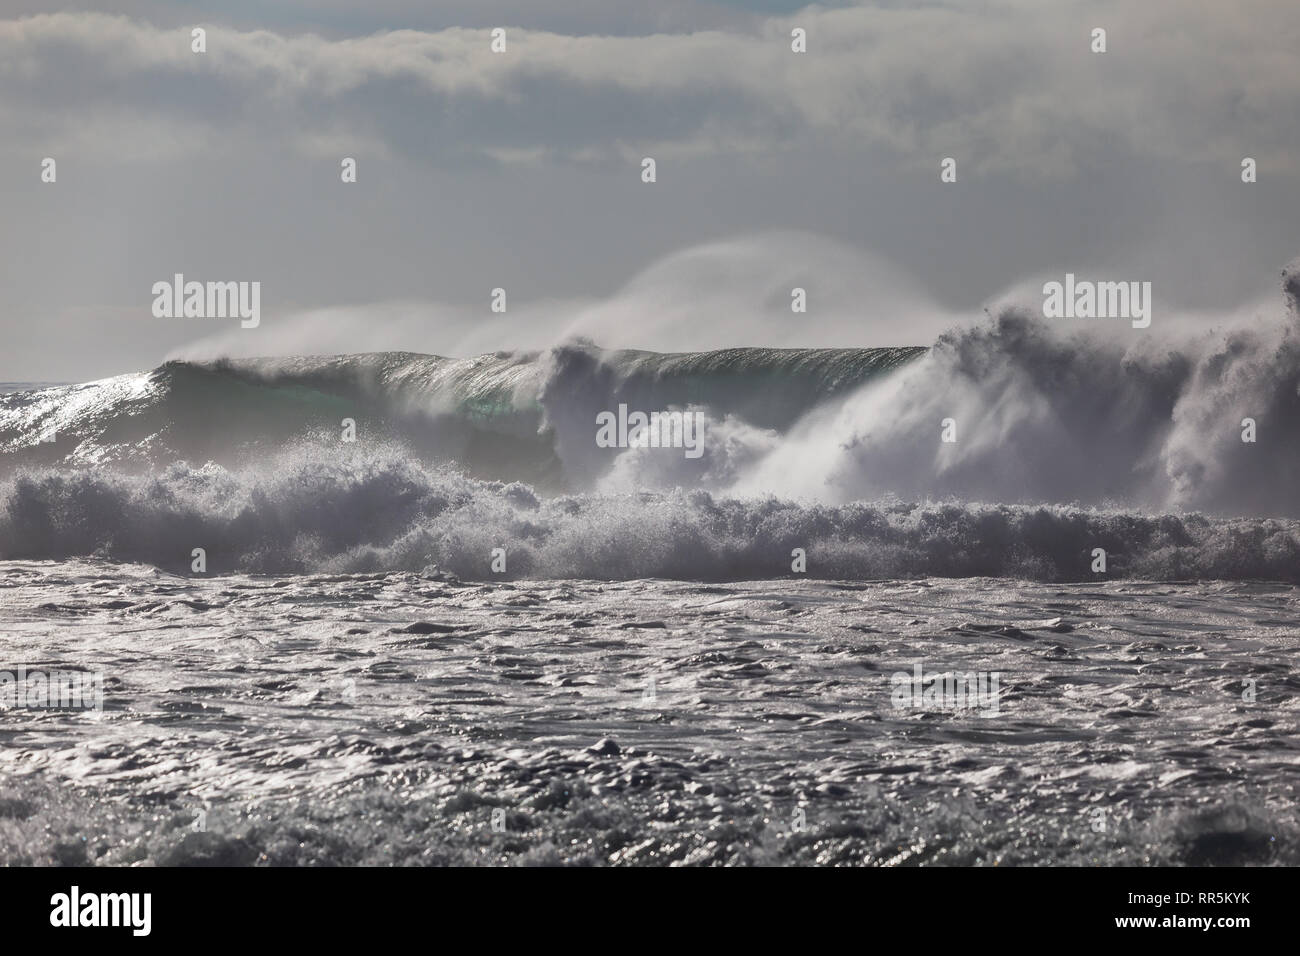 Starker Wind bläst Spray von der Spitze des großen Wellen nähern Windansea Beach in La Jolla, San Diego, Kalifornien, USA Stockfoto